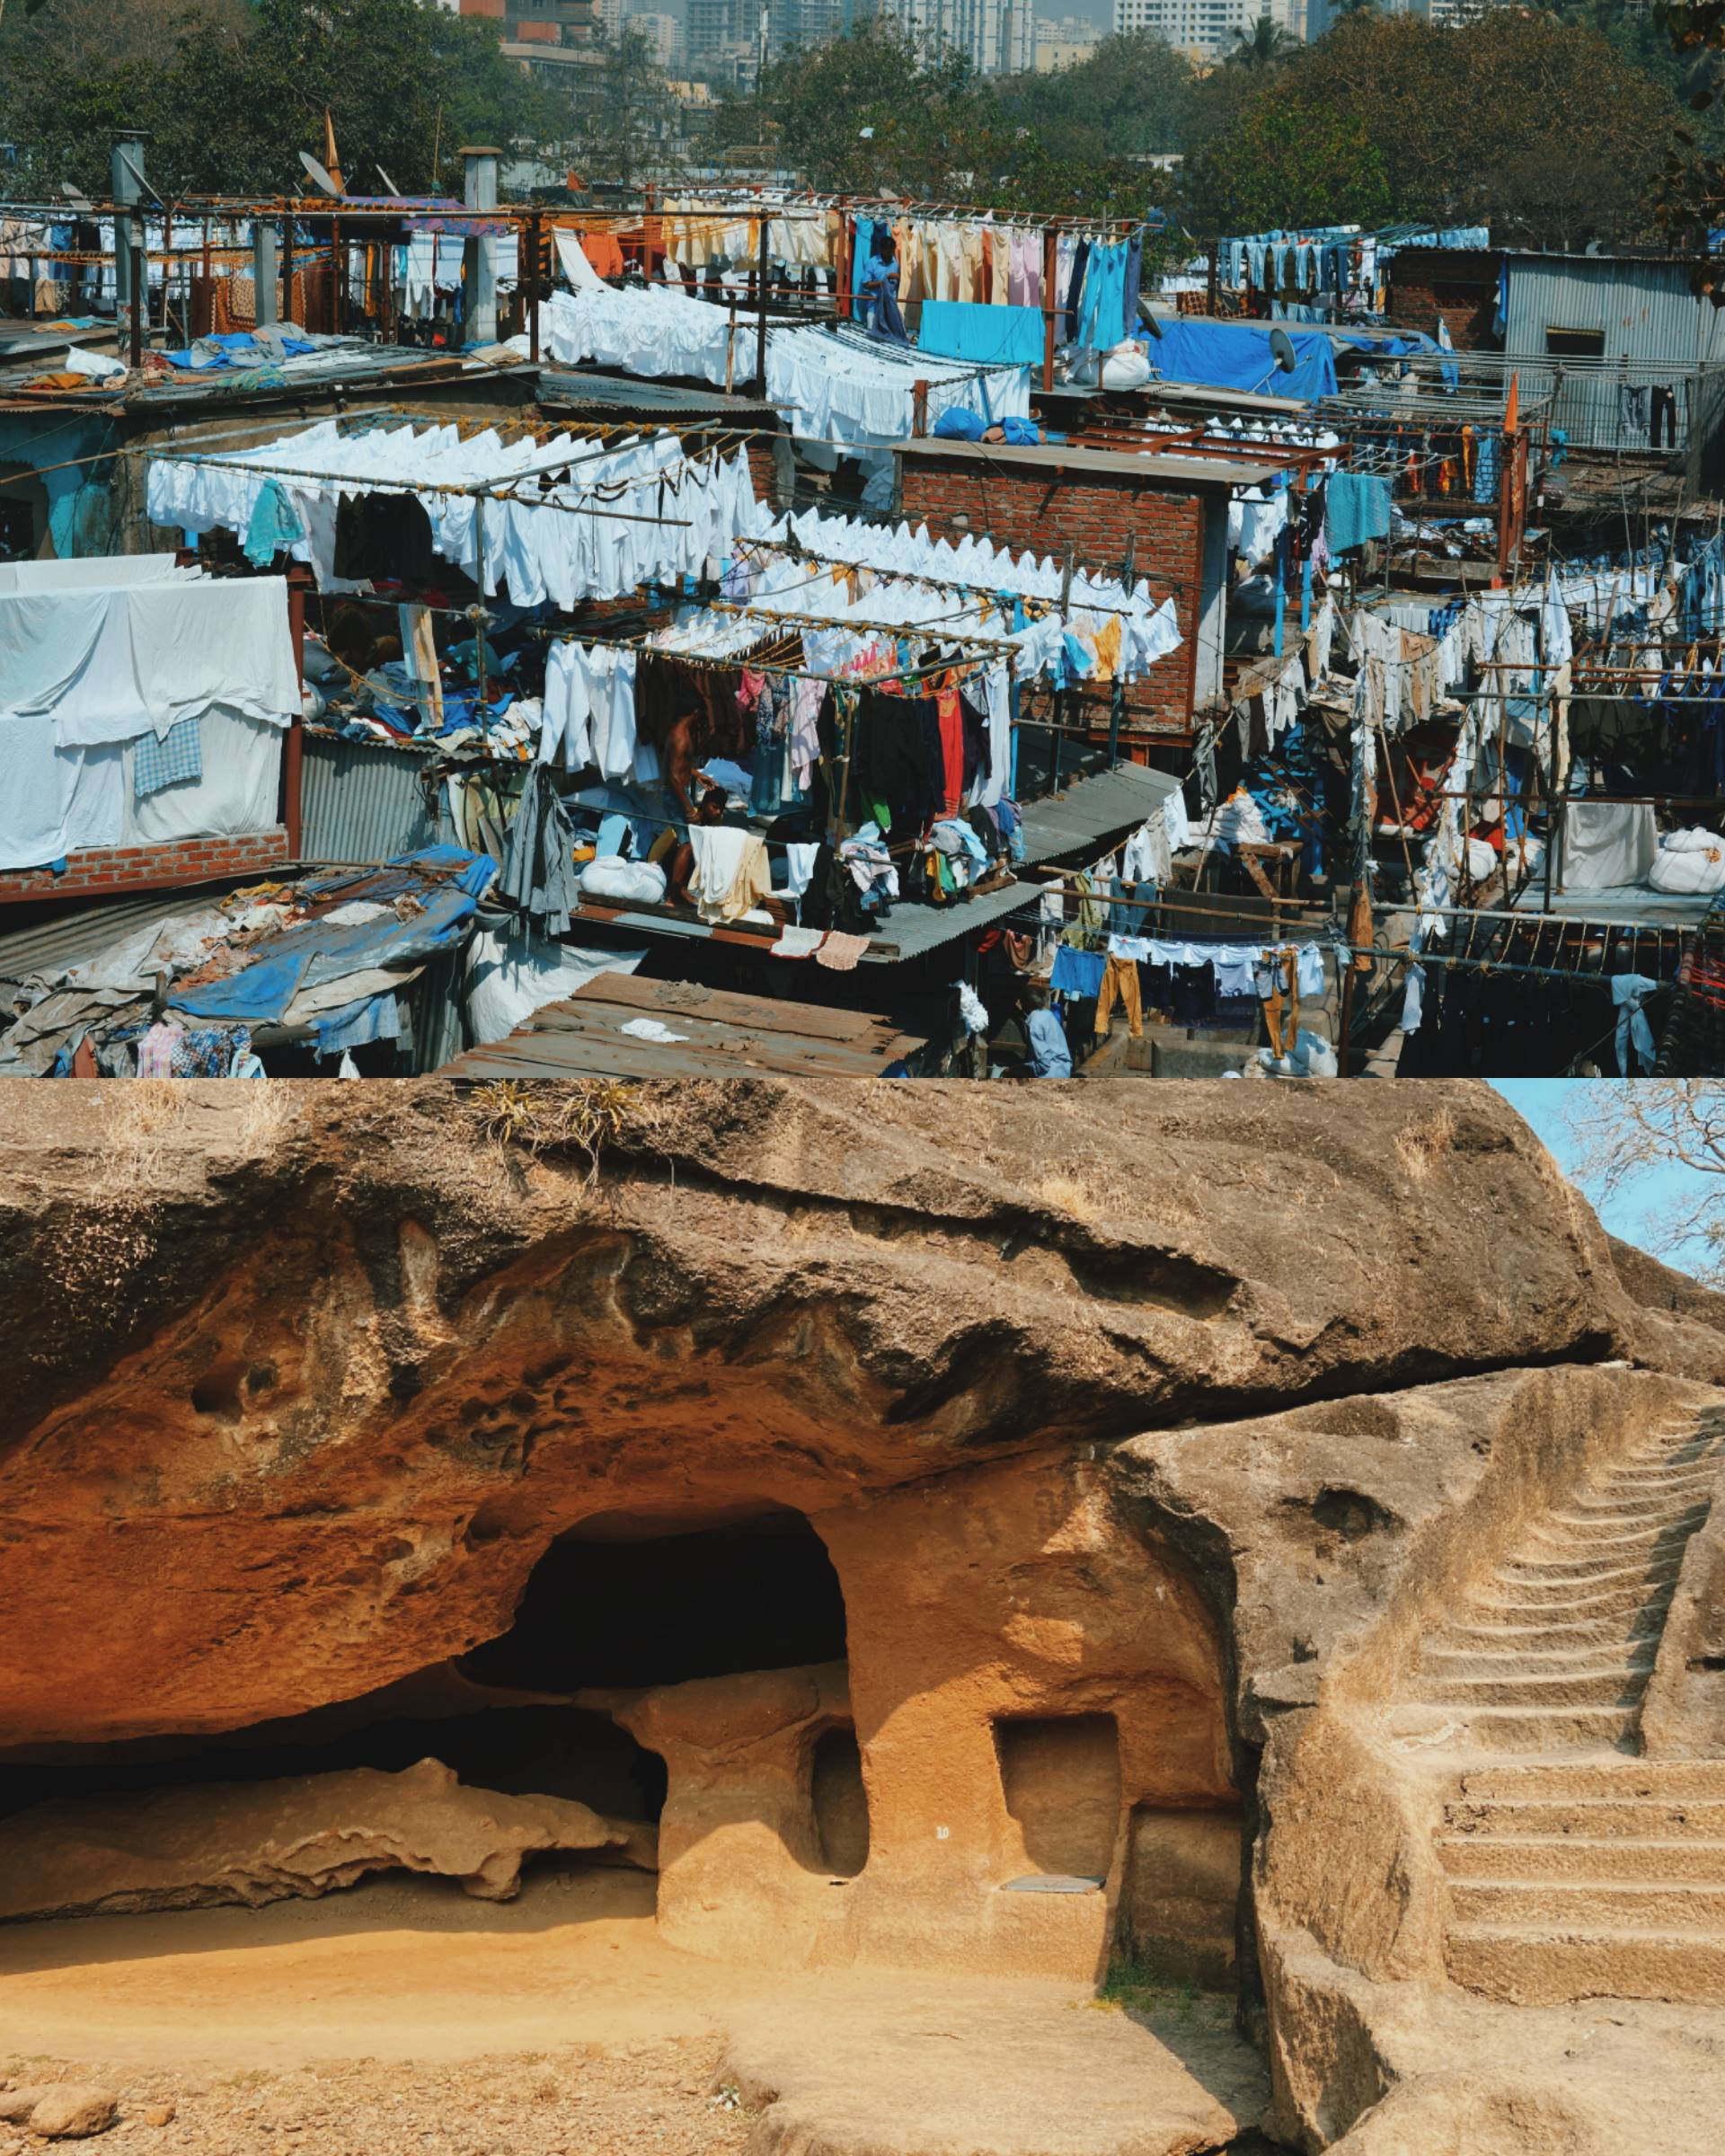 City sightseeing tour + Kanheri caves tour